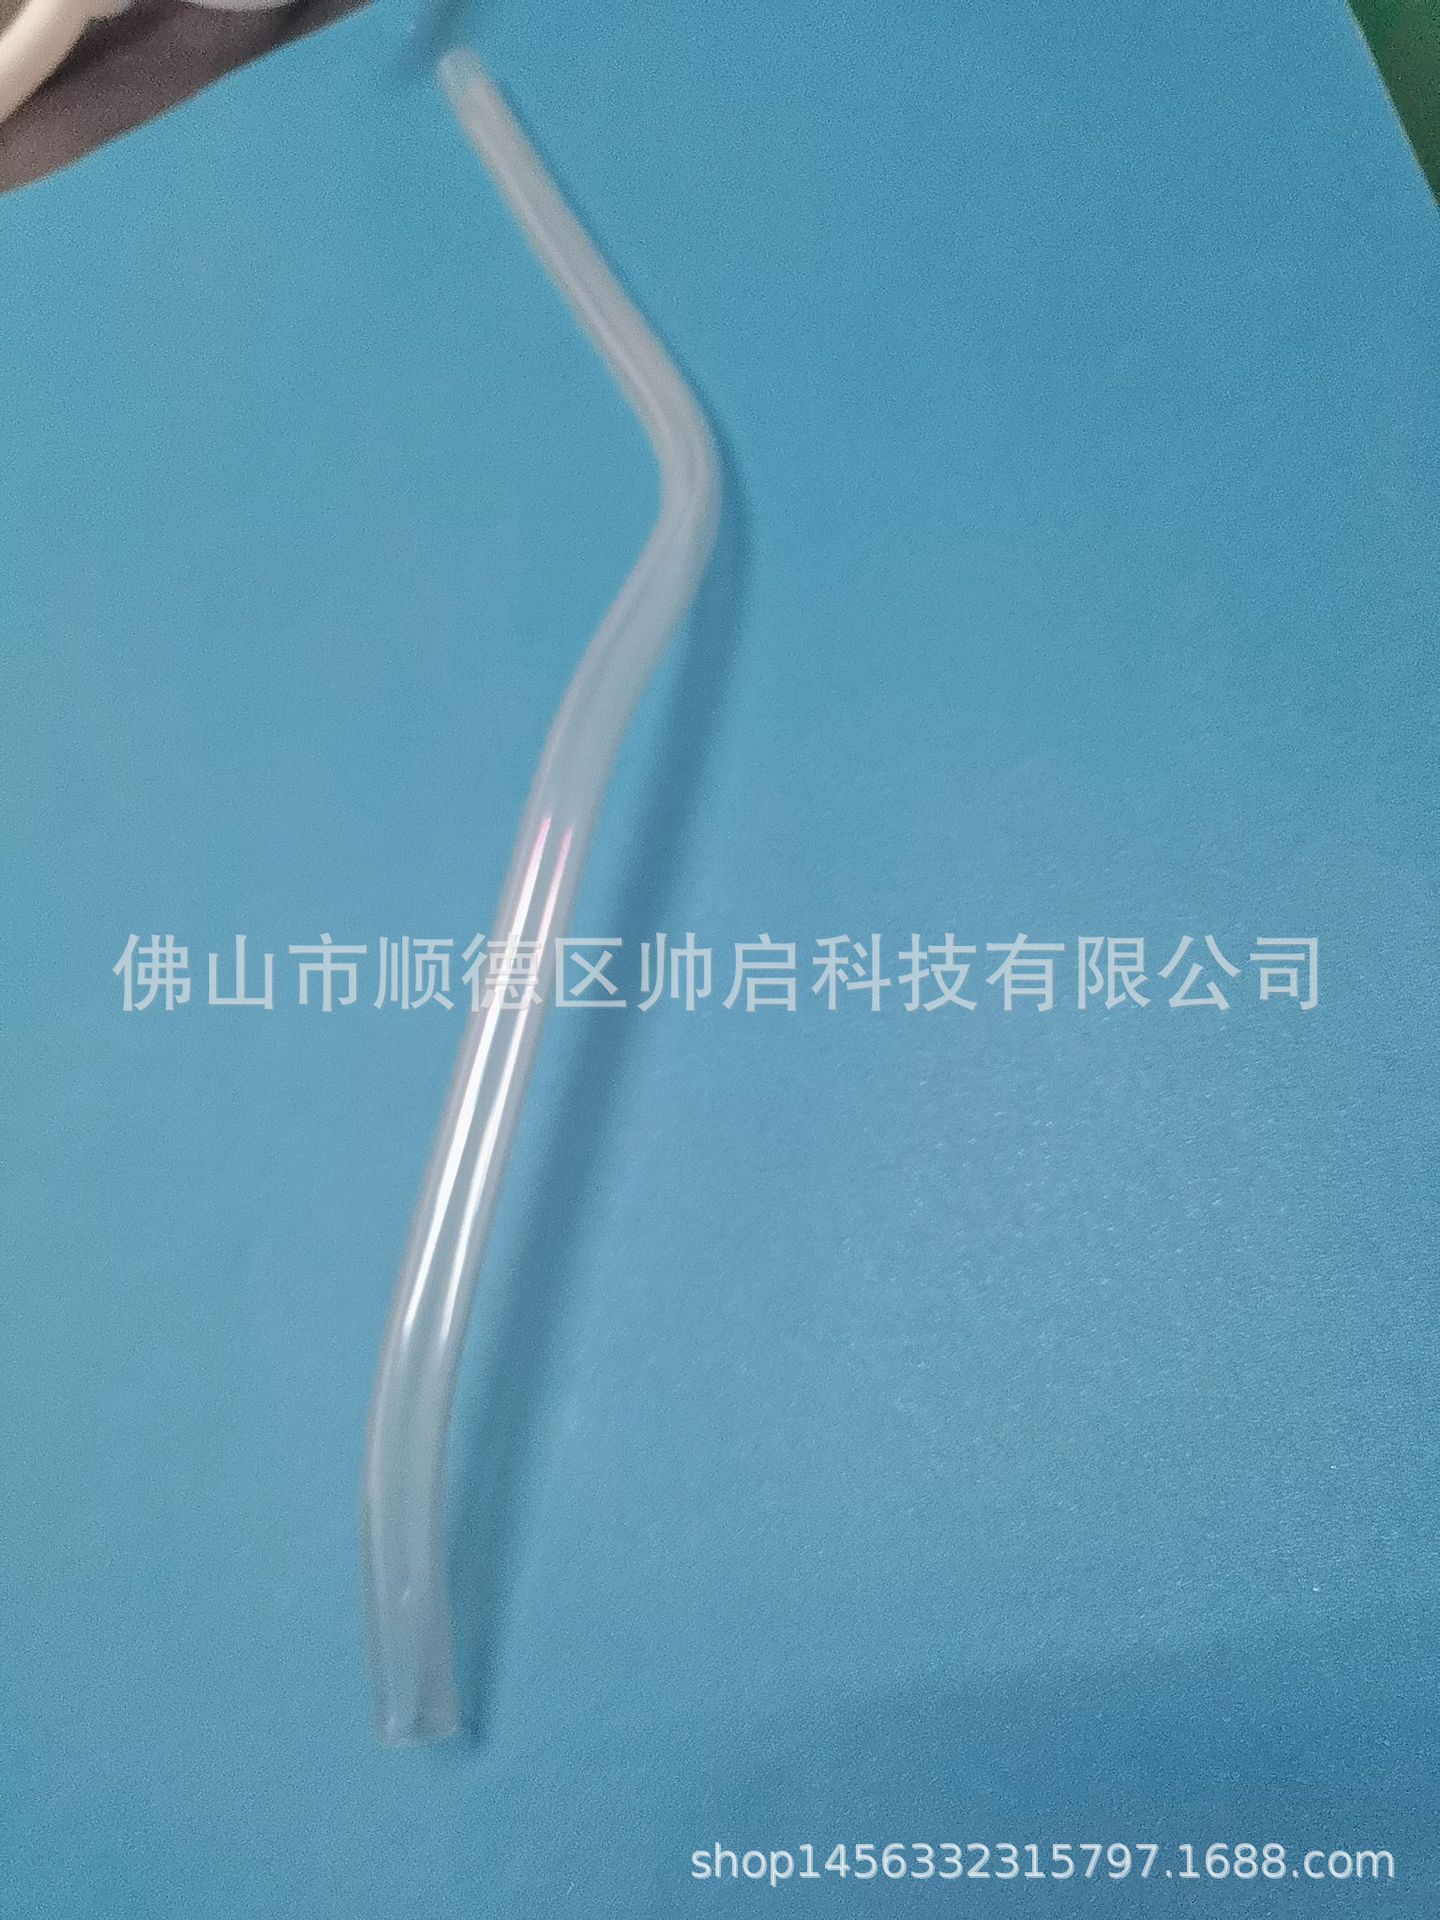 弯管 塑胶弯管 透明弯管